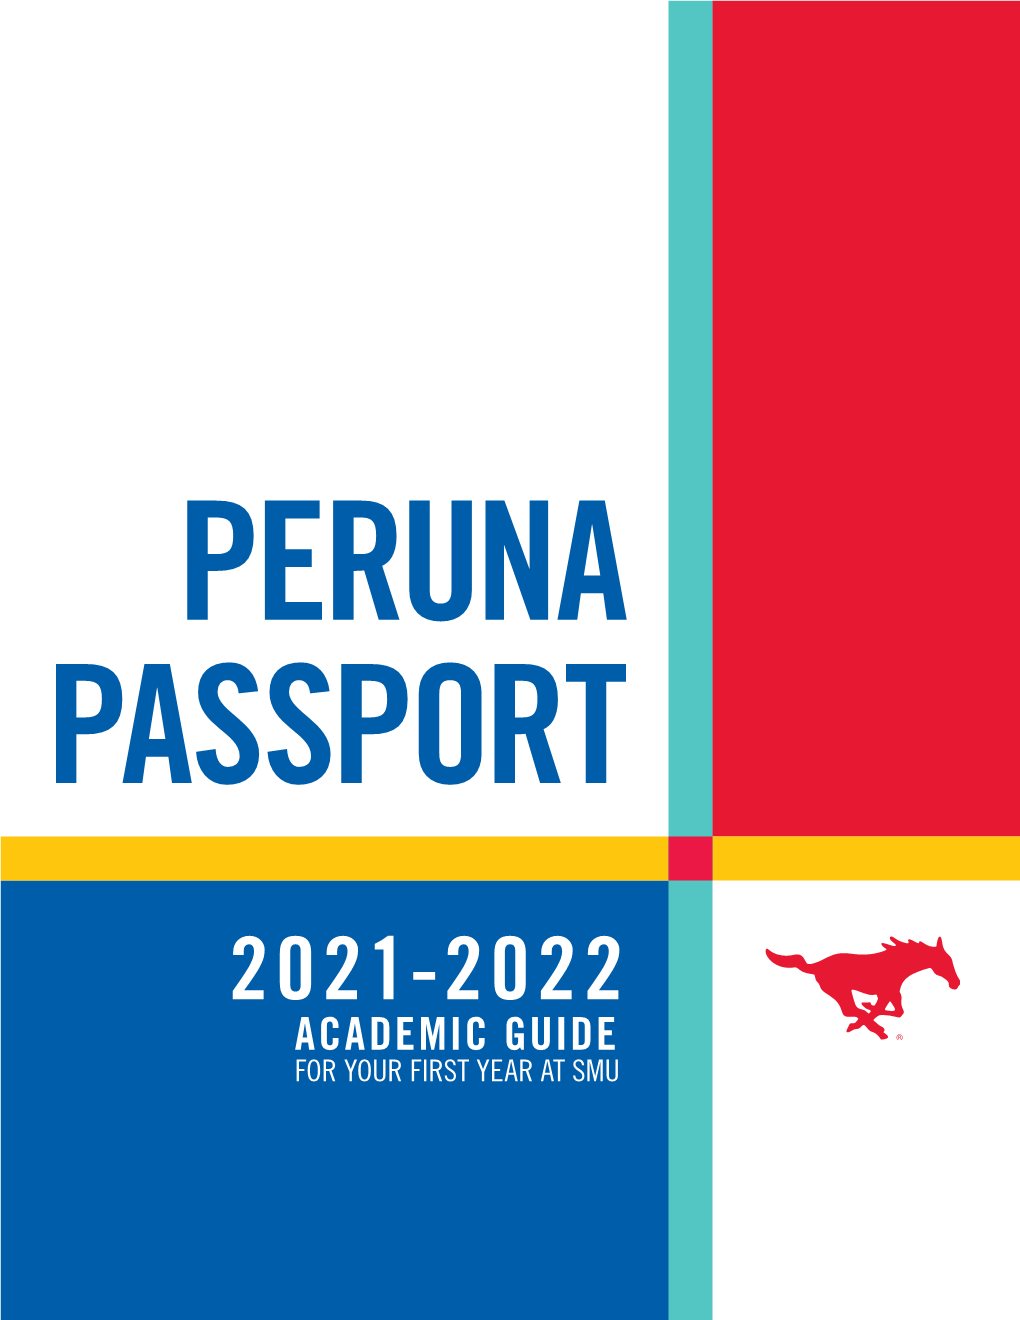 Peruna Passport